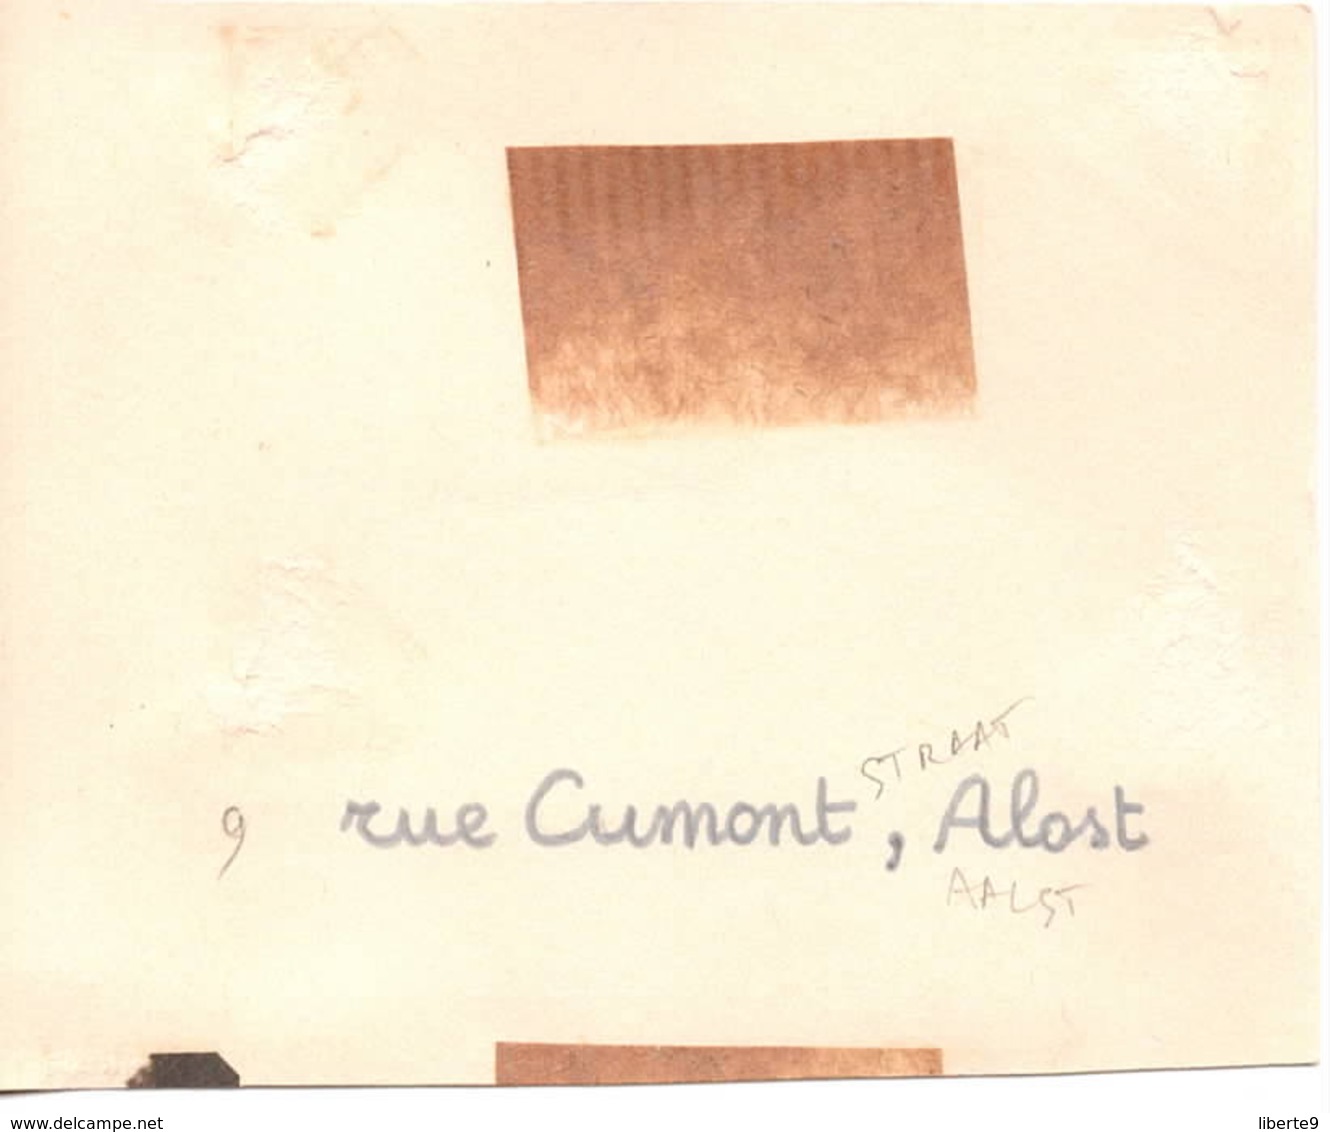 9 Rue Cumontstraat 1944  Aalst Alost - Photo 6x9cm  Belgique - Coches